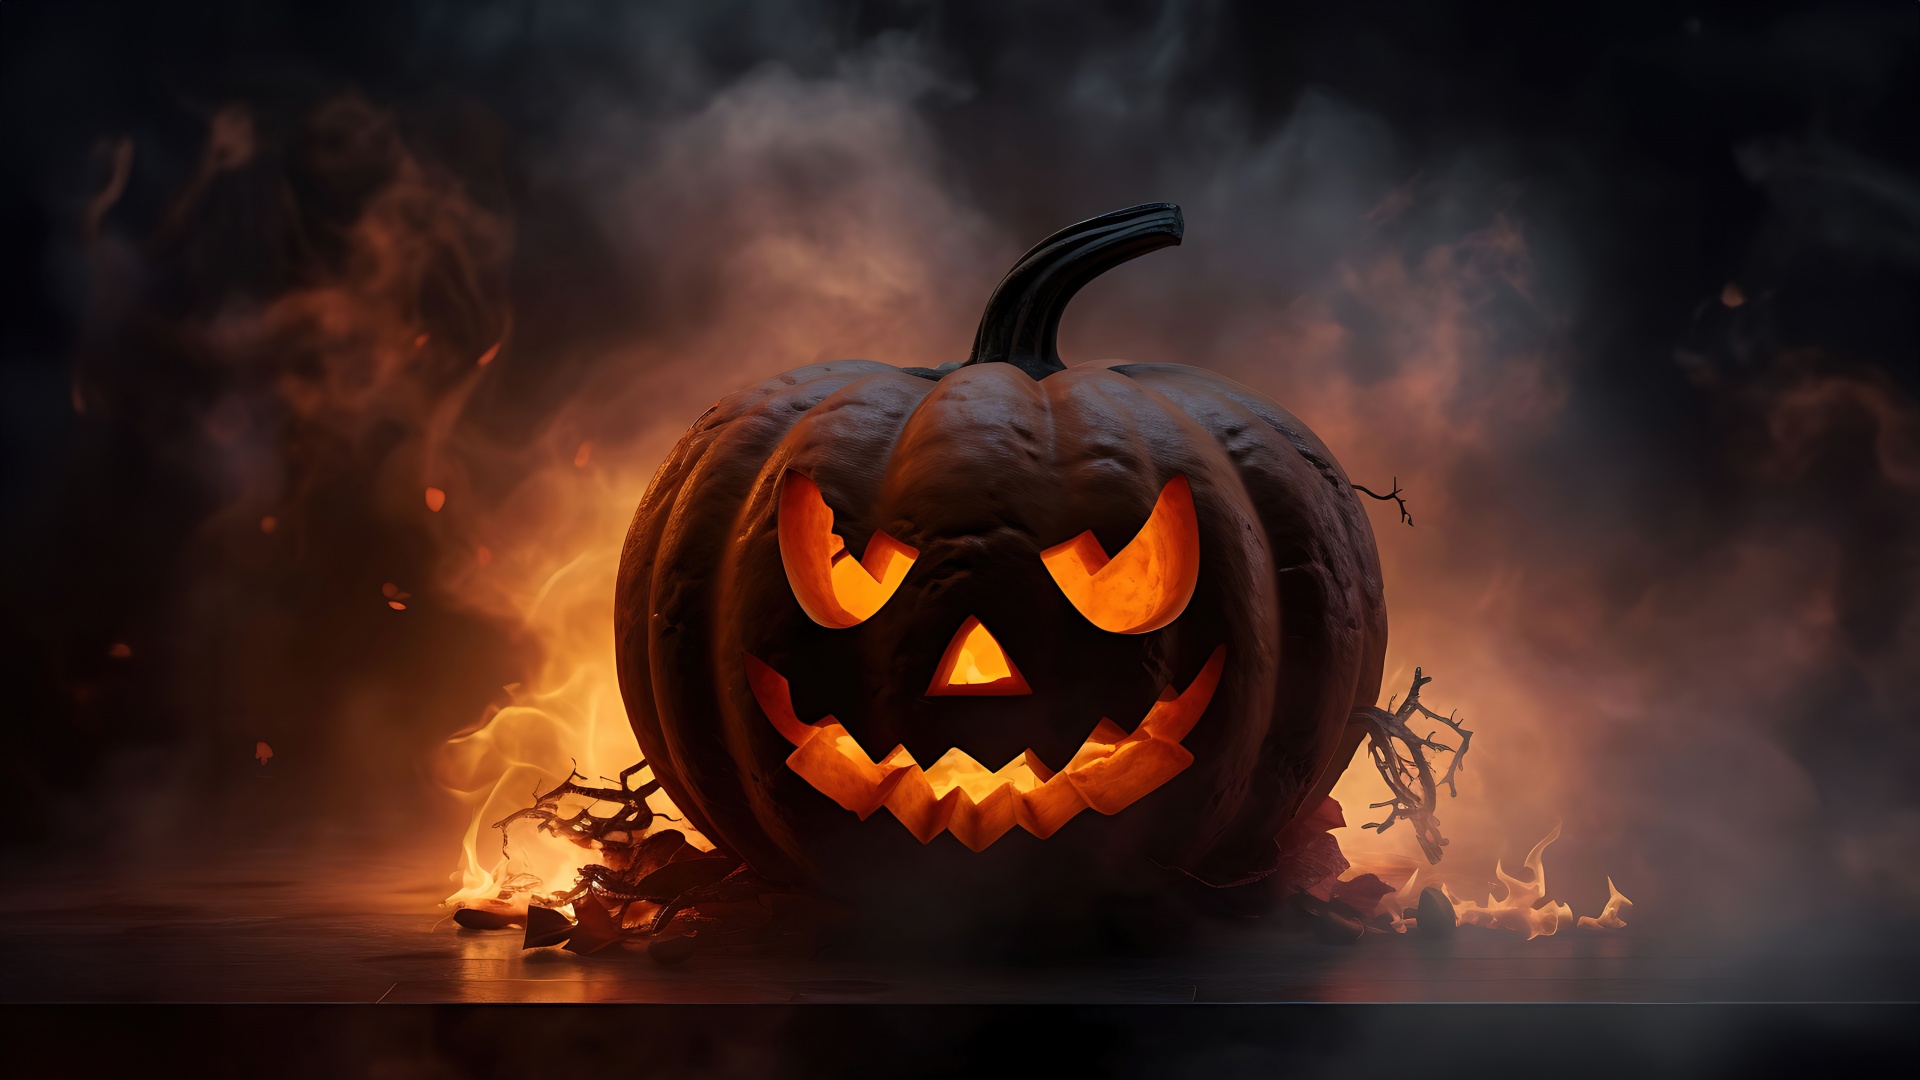  Halloween Pumpkin Fire HD Background 1920x1080  